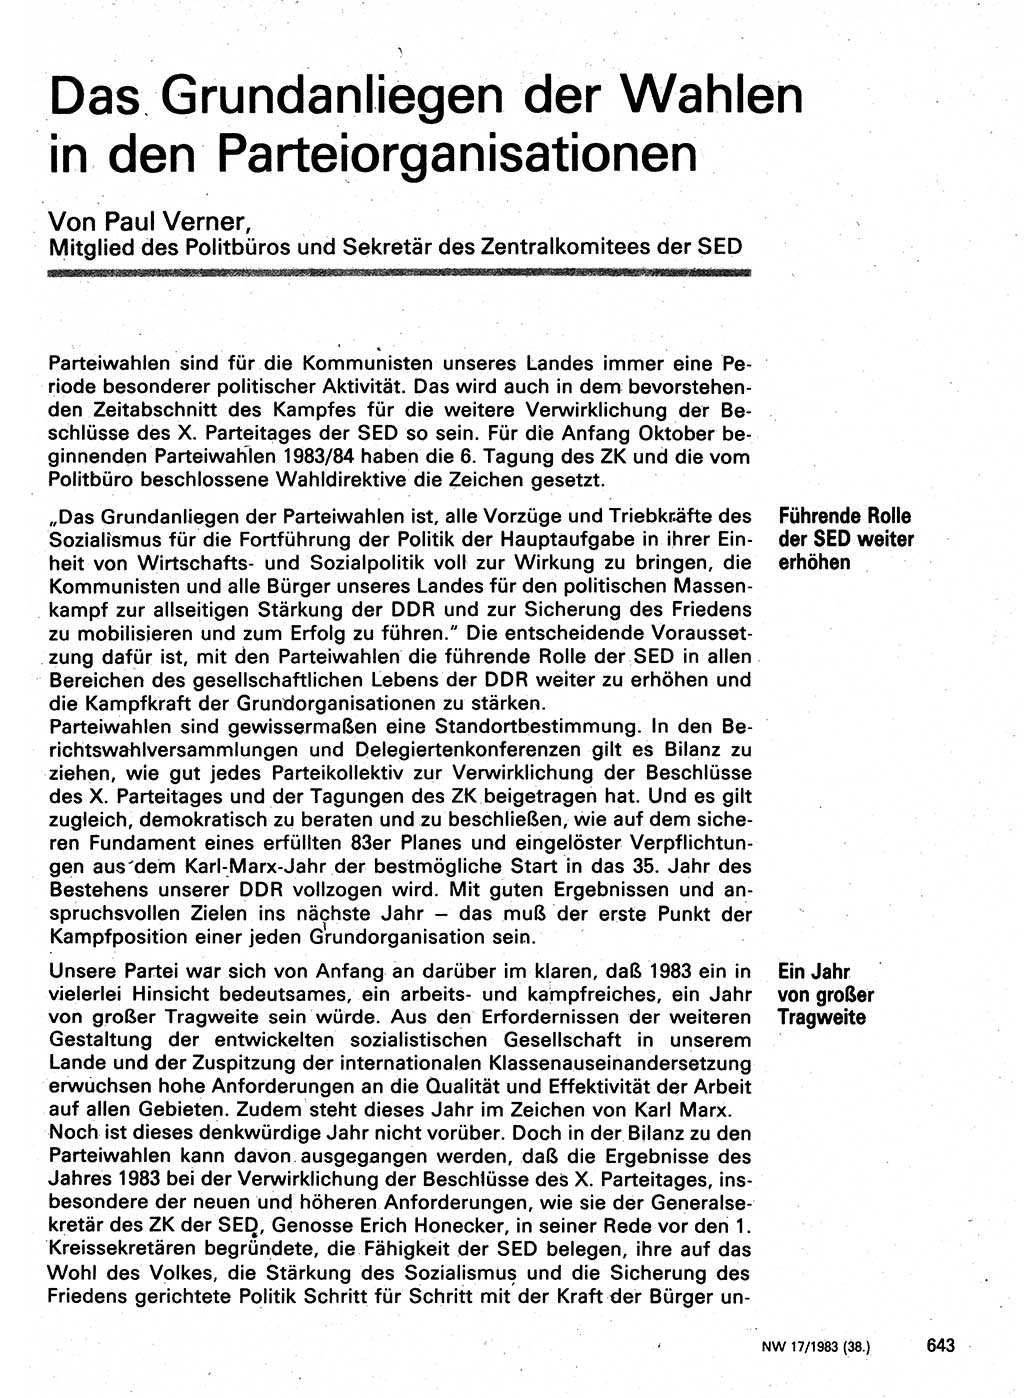 Neuer Weg (NW), Organ des Zentralkomitees (ZK) der SED (Sozialistische Einheitspartei Deutschlands) für Fragen des Parteilebens, 38. Jahrgang [Deutsche Demokratische Republik (DDR)] 1983, Seite 643 (NW ZK SED DDR 1983, S. 643)